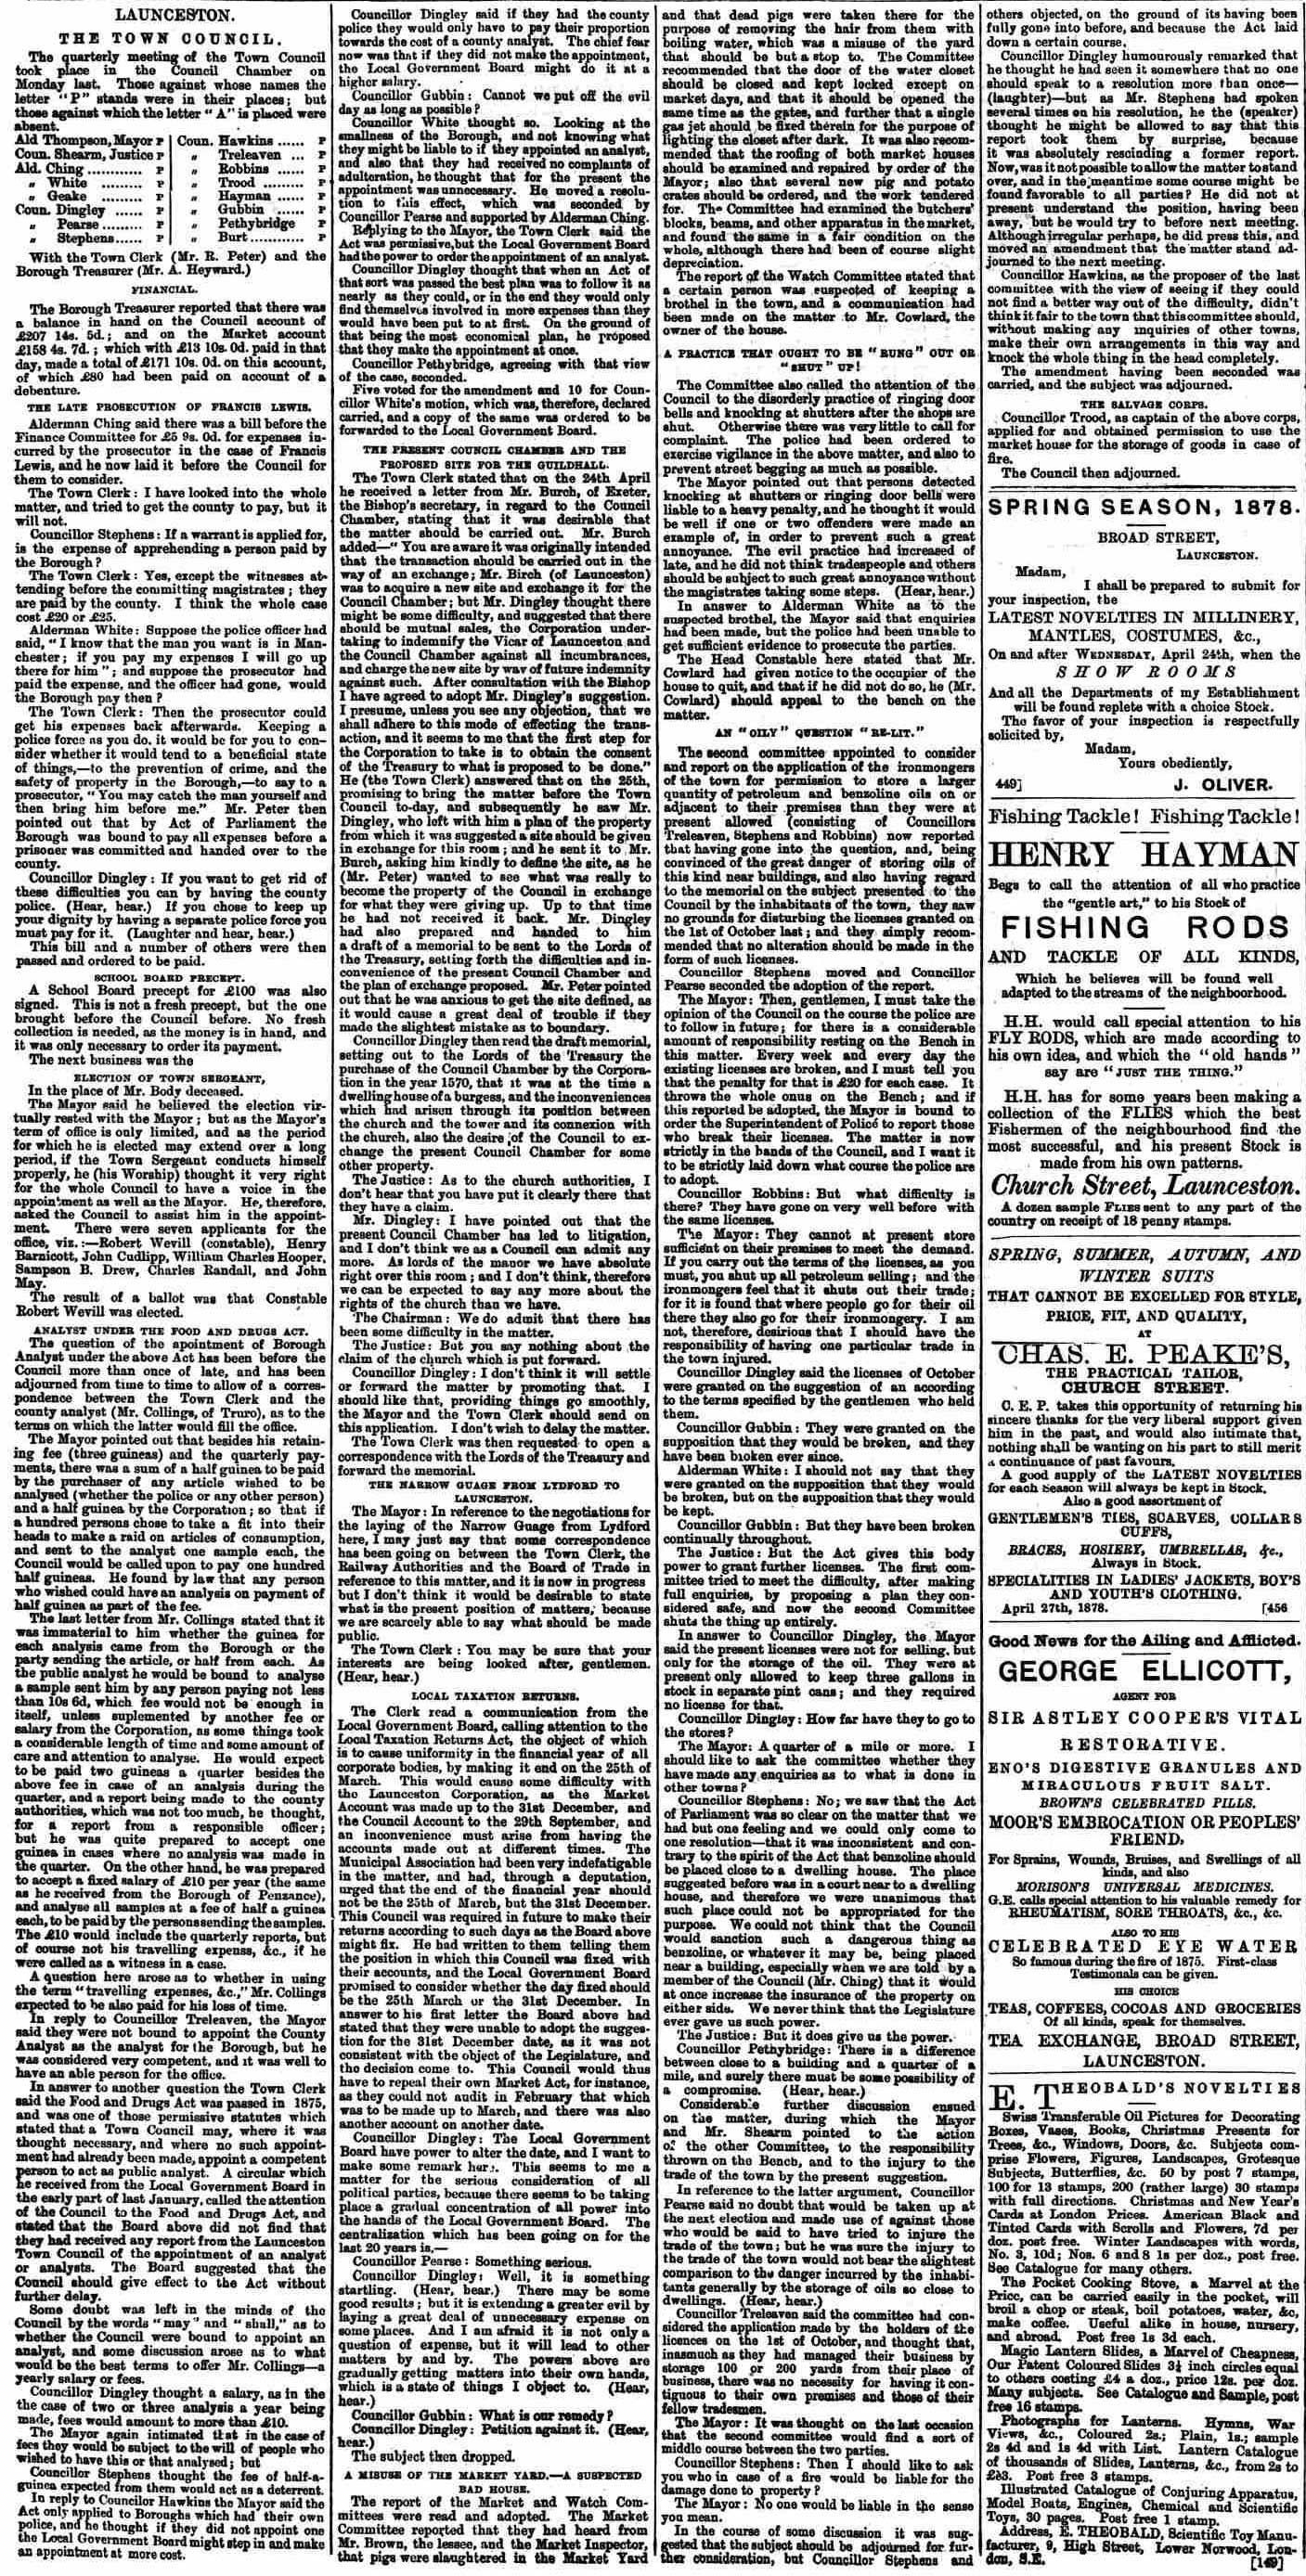 11 May 1878